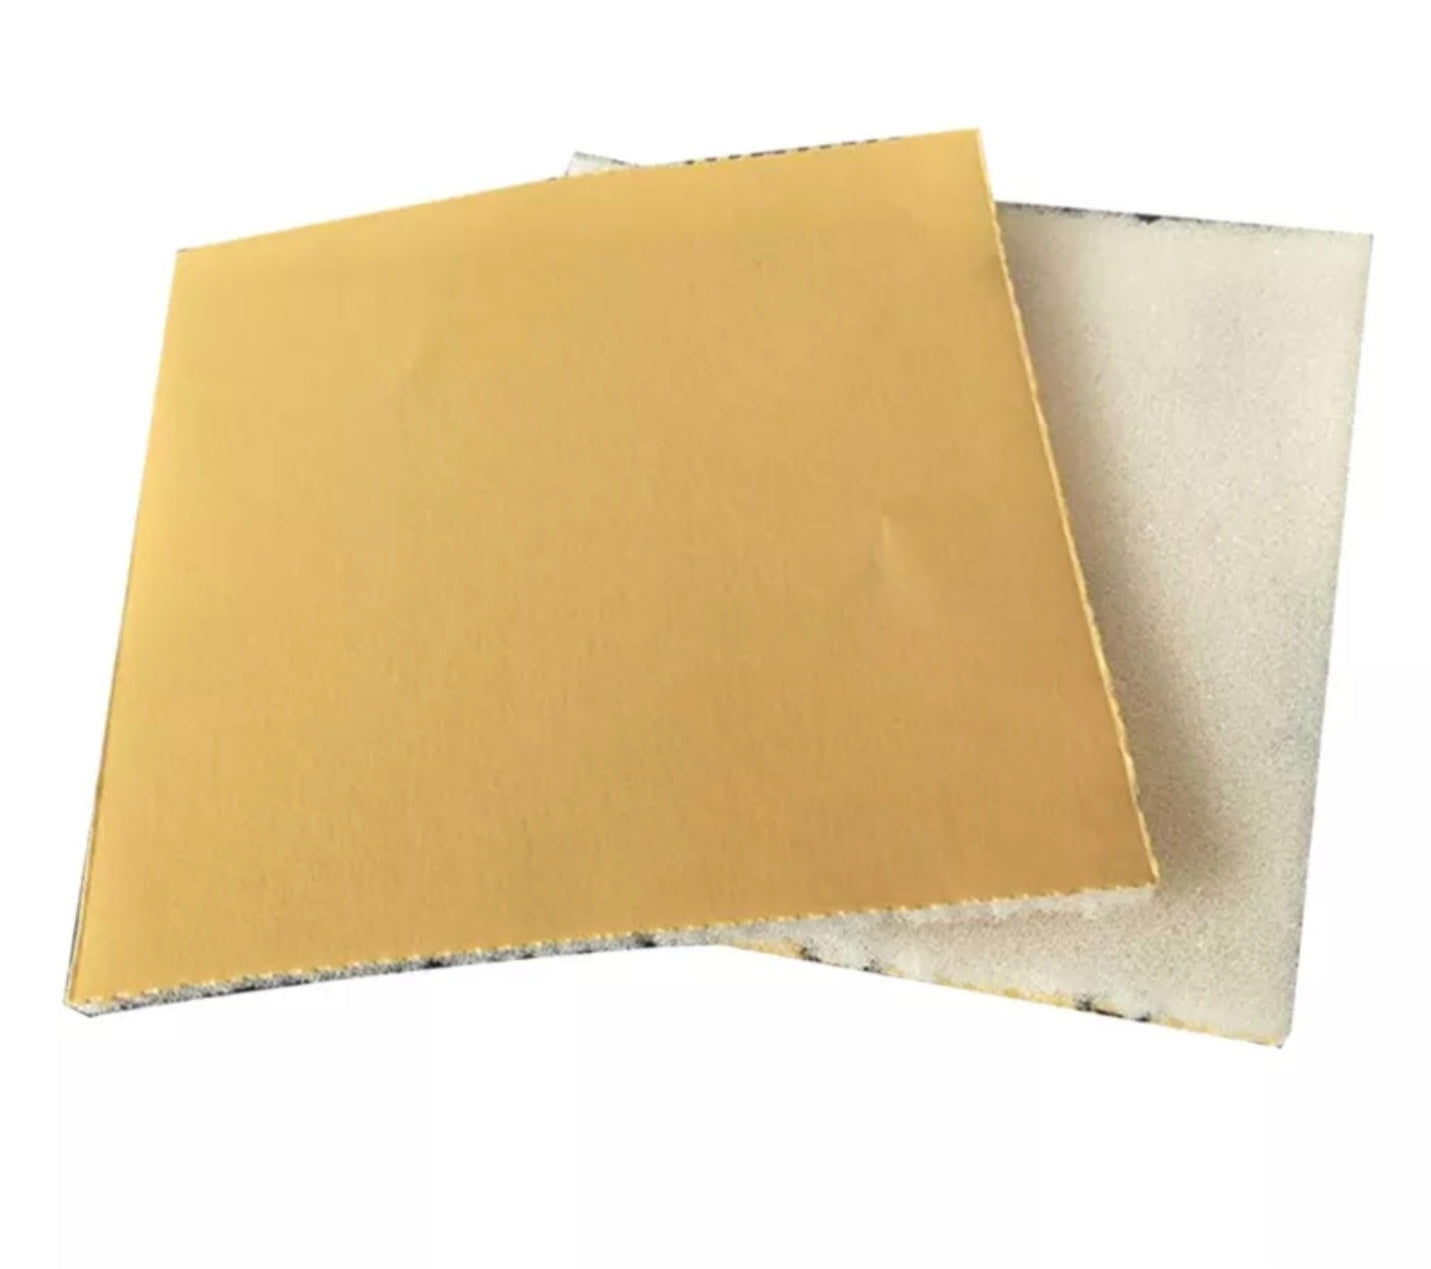 Wet & Dry Sponge sand paper Sheets